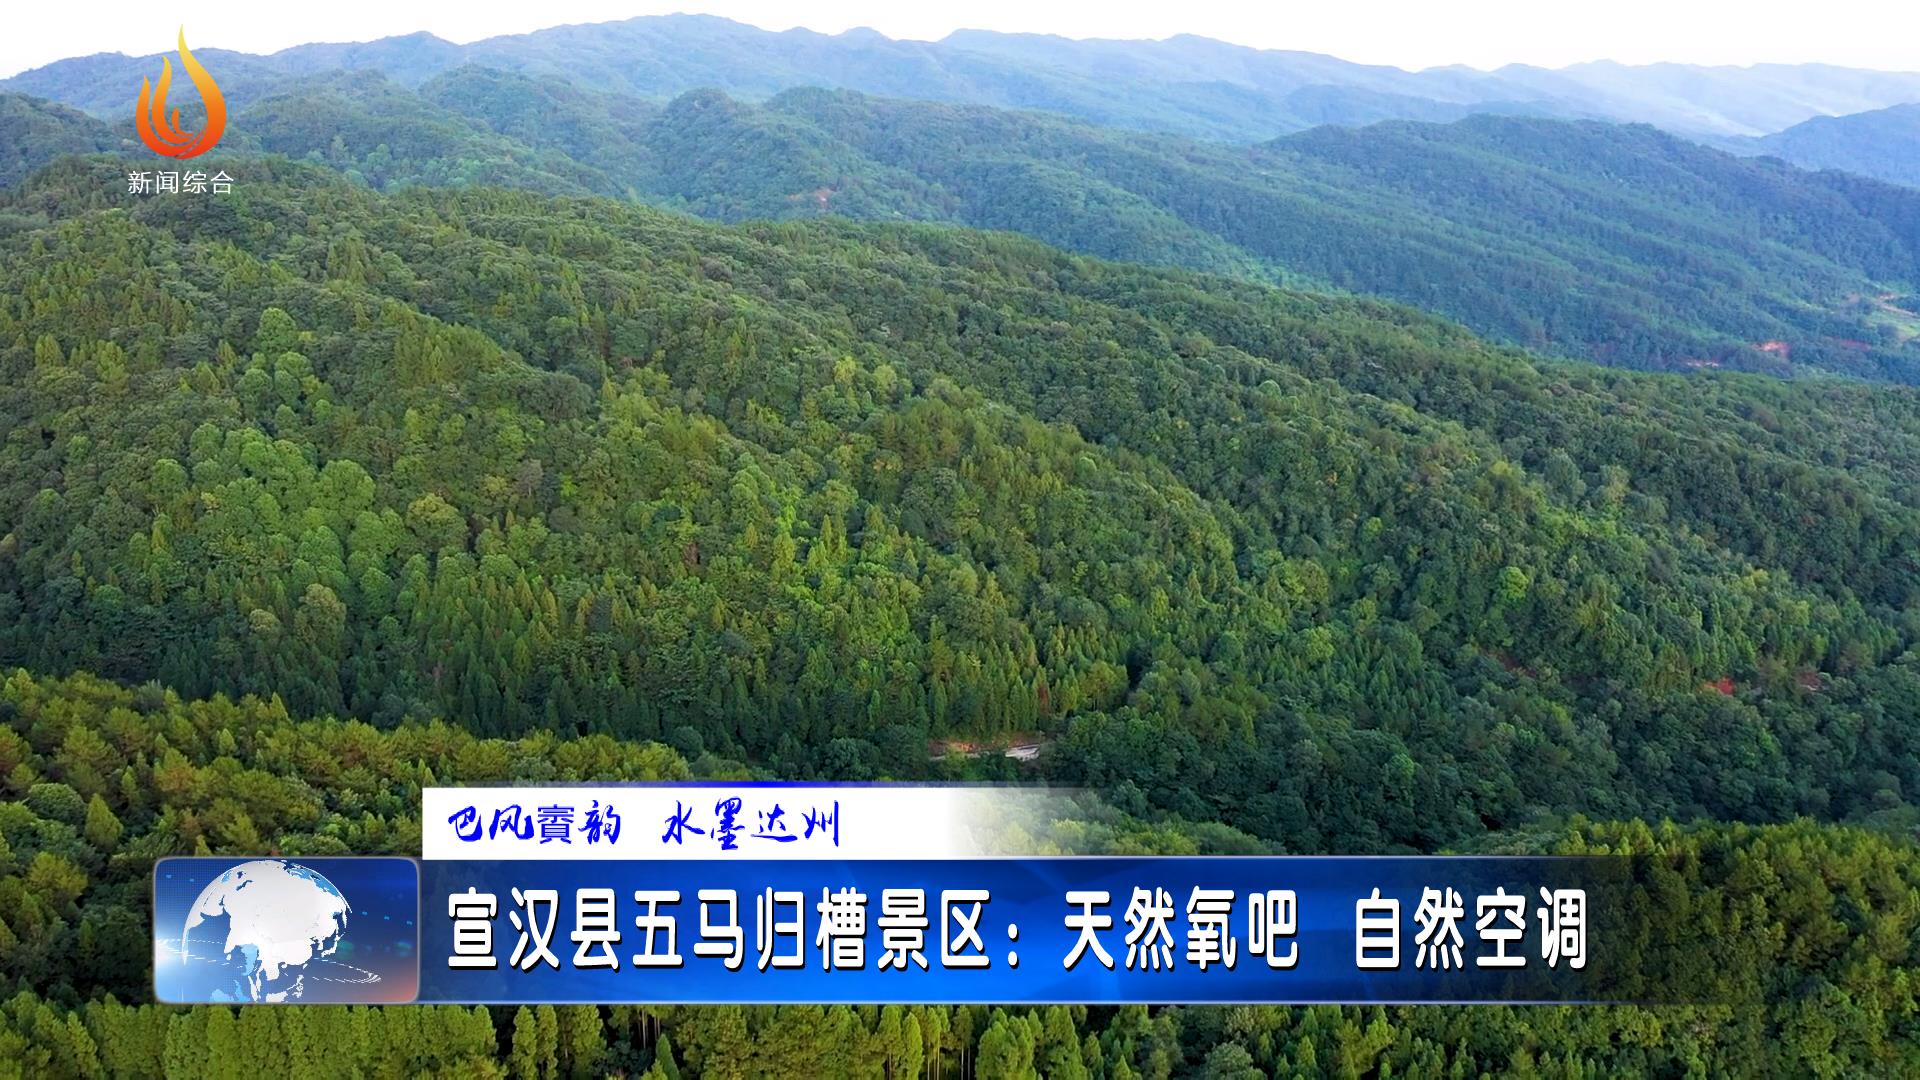 宣汉县五马归槽景区:天然氧吧 自然空调